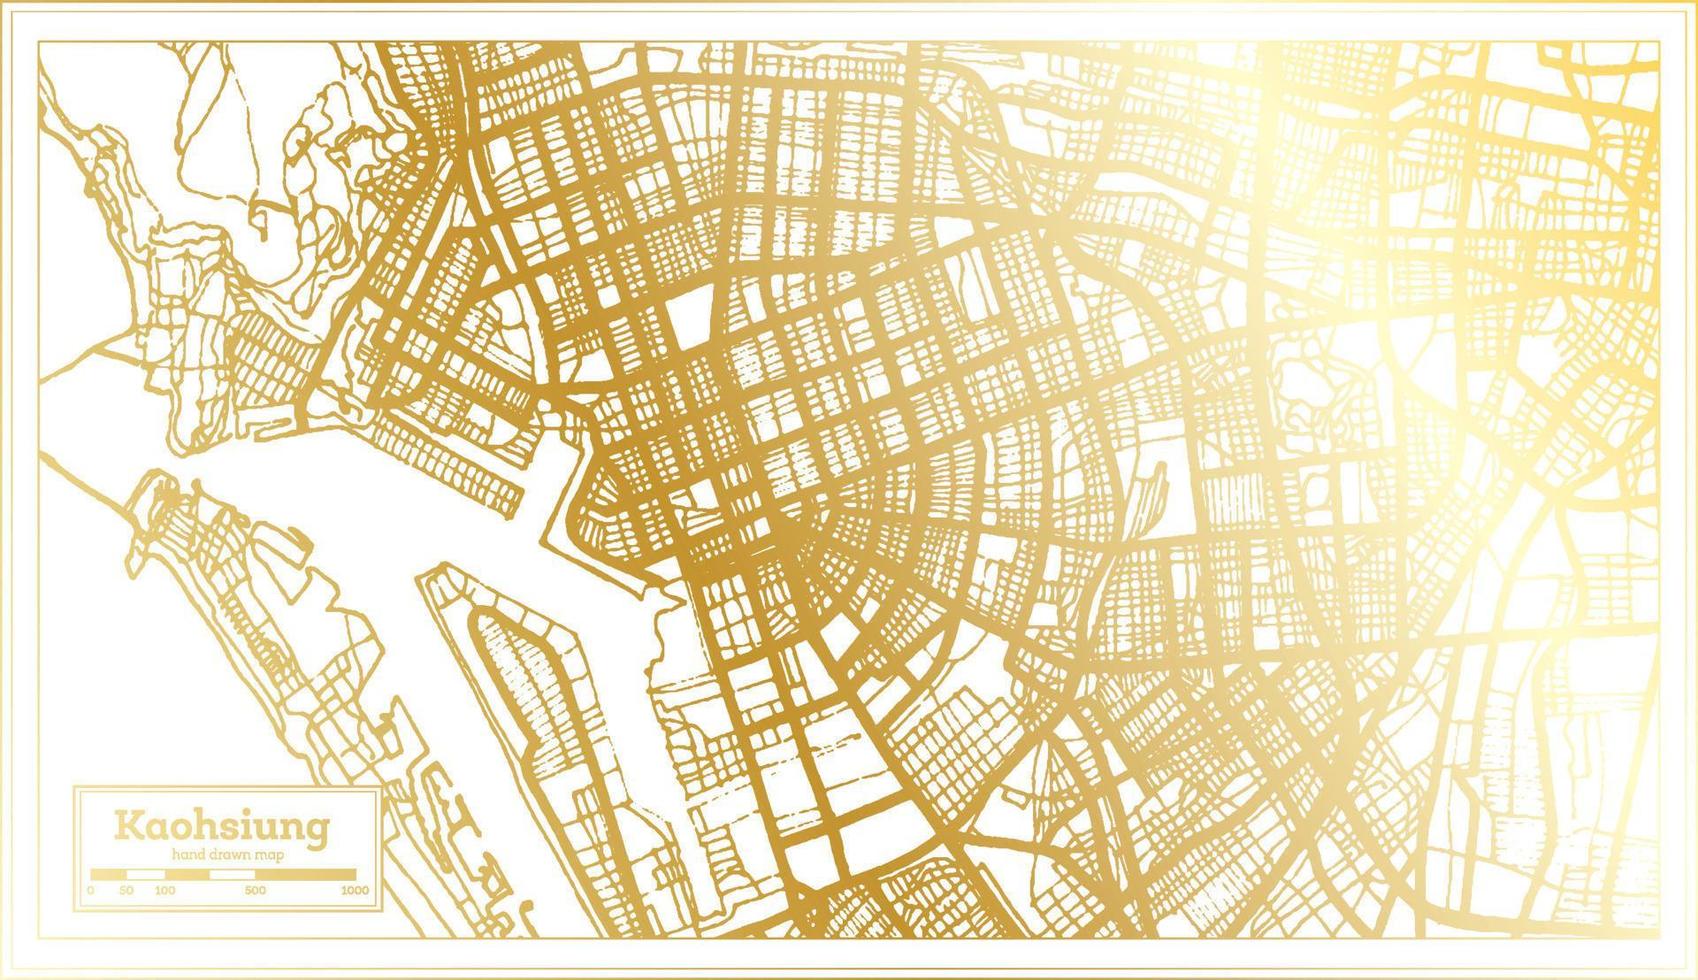 plan de la ville de kaohsiung taiwan dans un style rétro de couleur dorée. carte muette. vecteur